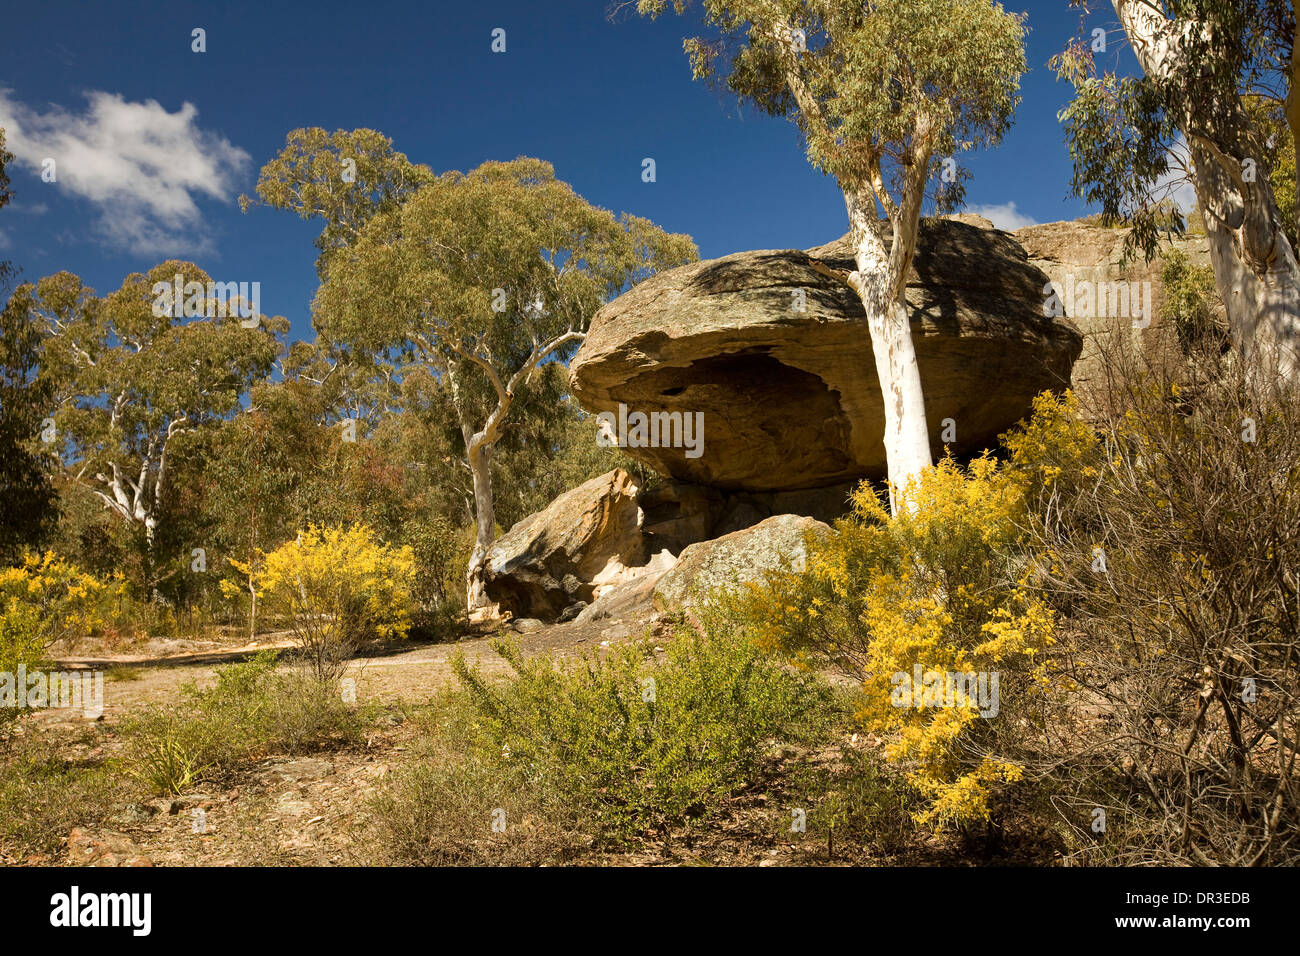 Paysage de forêt avec les rochers de granit et de fleurs de mimosa à Dunn's Swamp dans Parc National Wollemi NSW Australie Banque D'Images